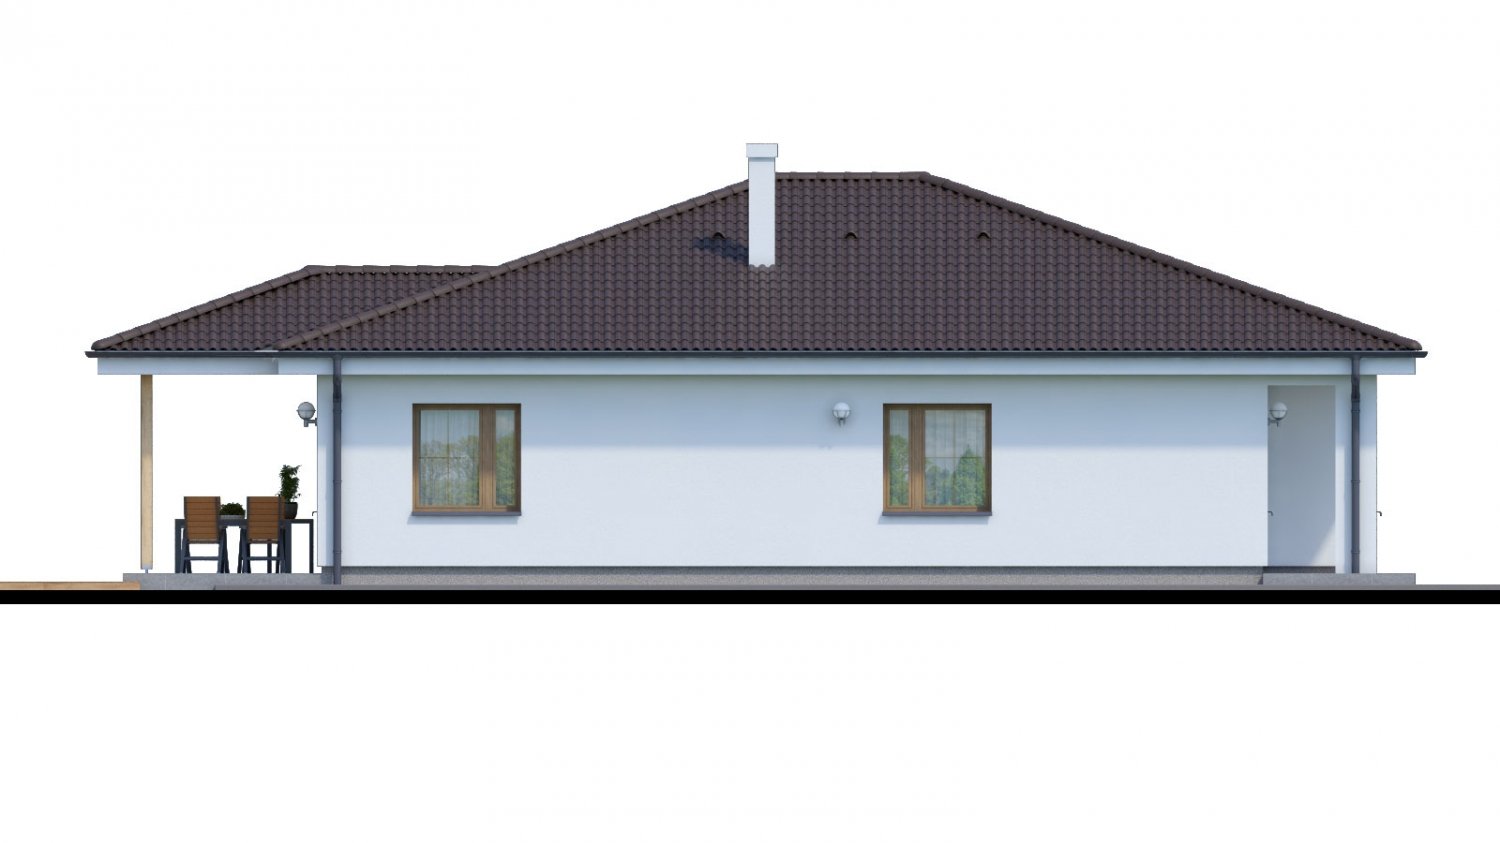 Zrkadlový pohľad 4. - Jednoduchý 5-pokojový rodinný dům s valbovou střechou. Zpracovaný i ve virtuální realitě 3d.